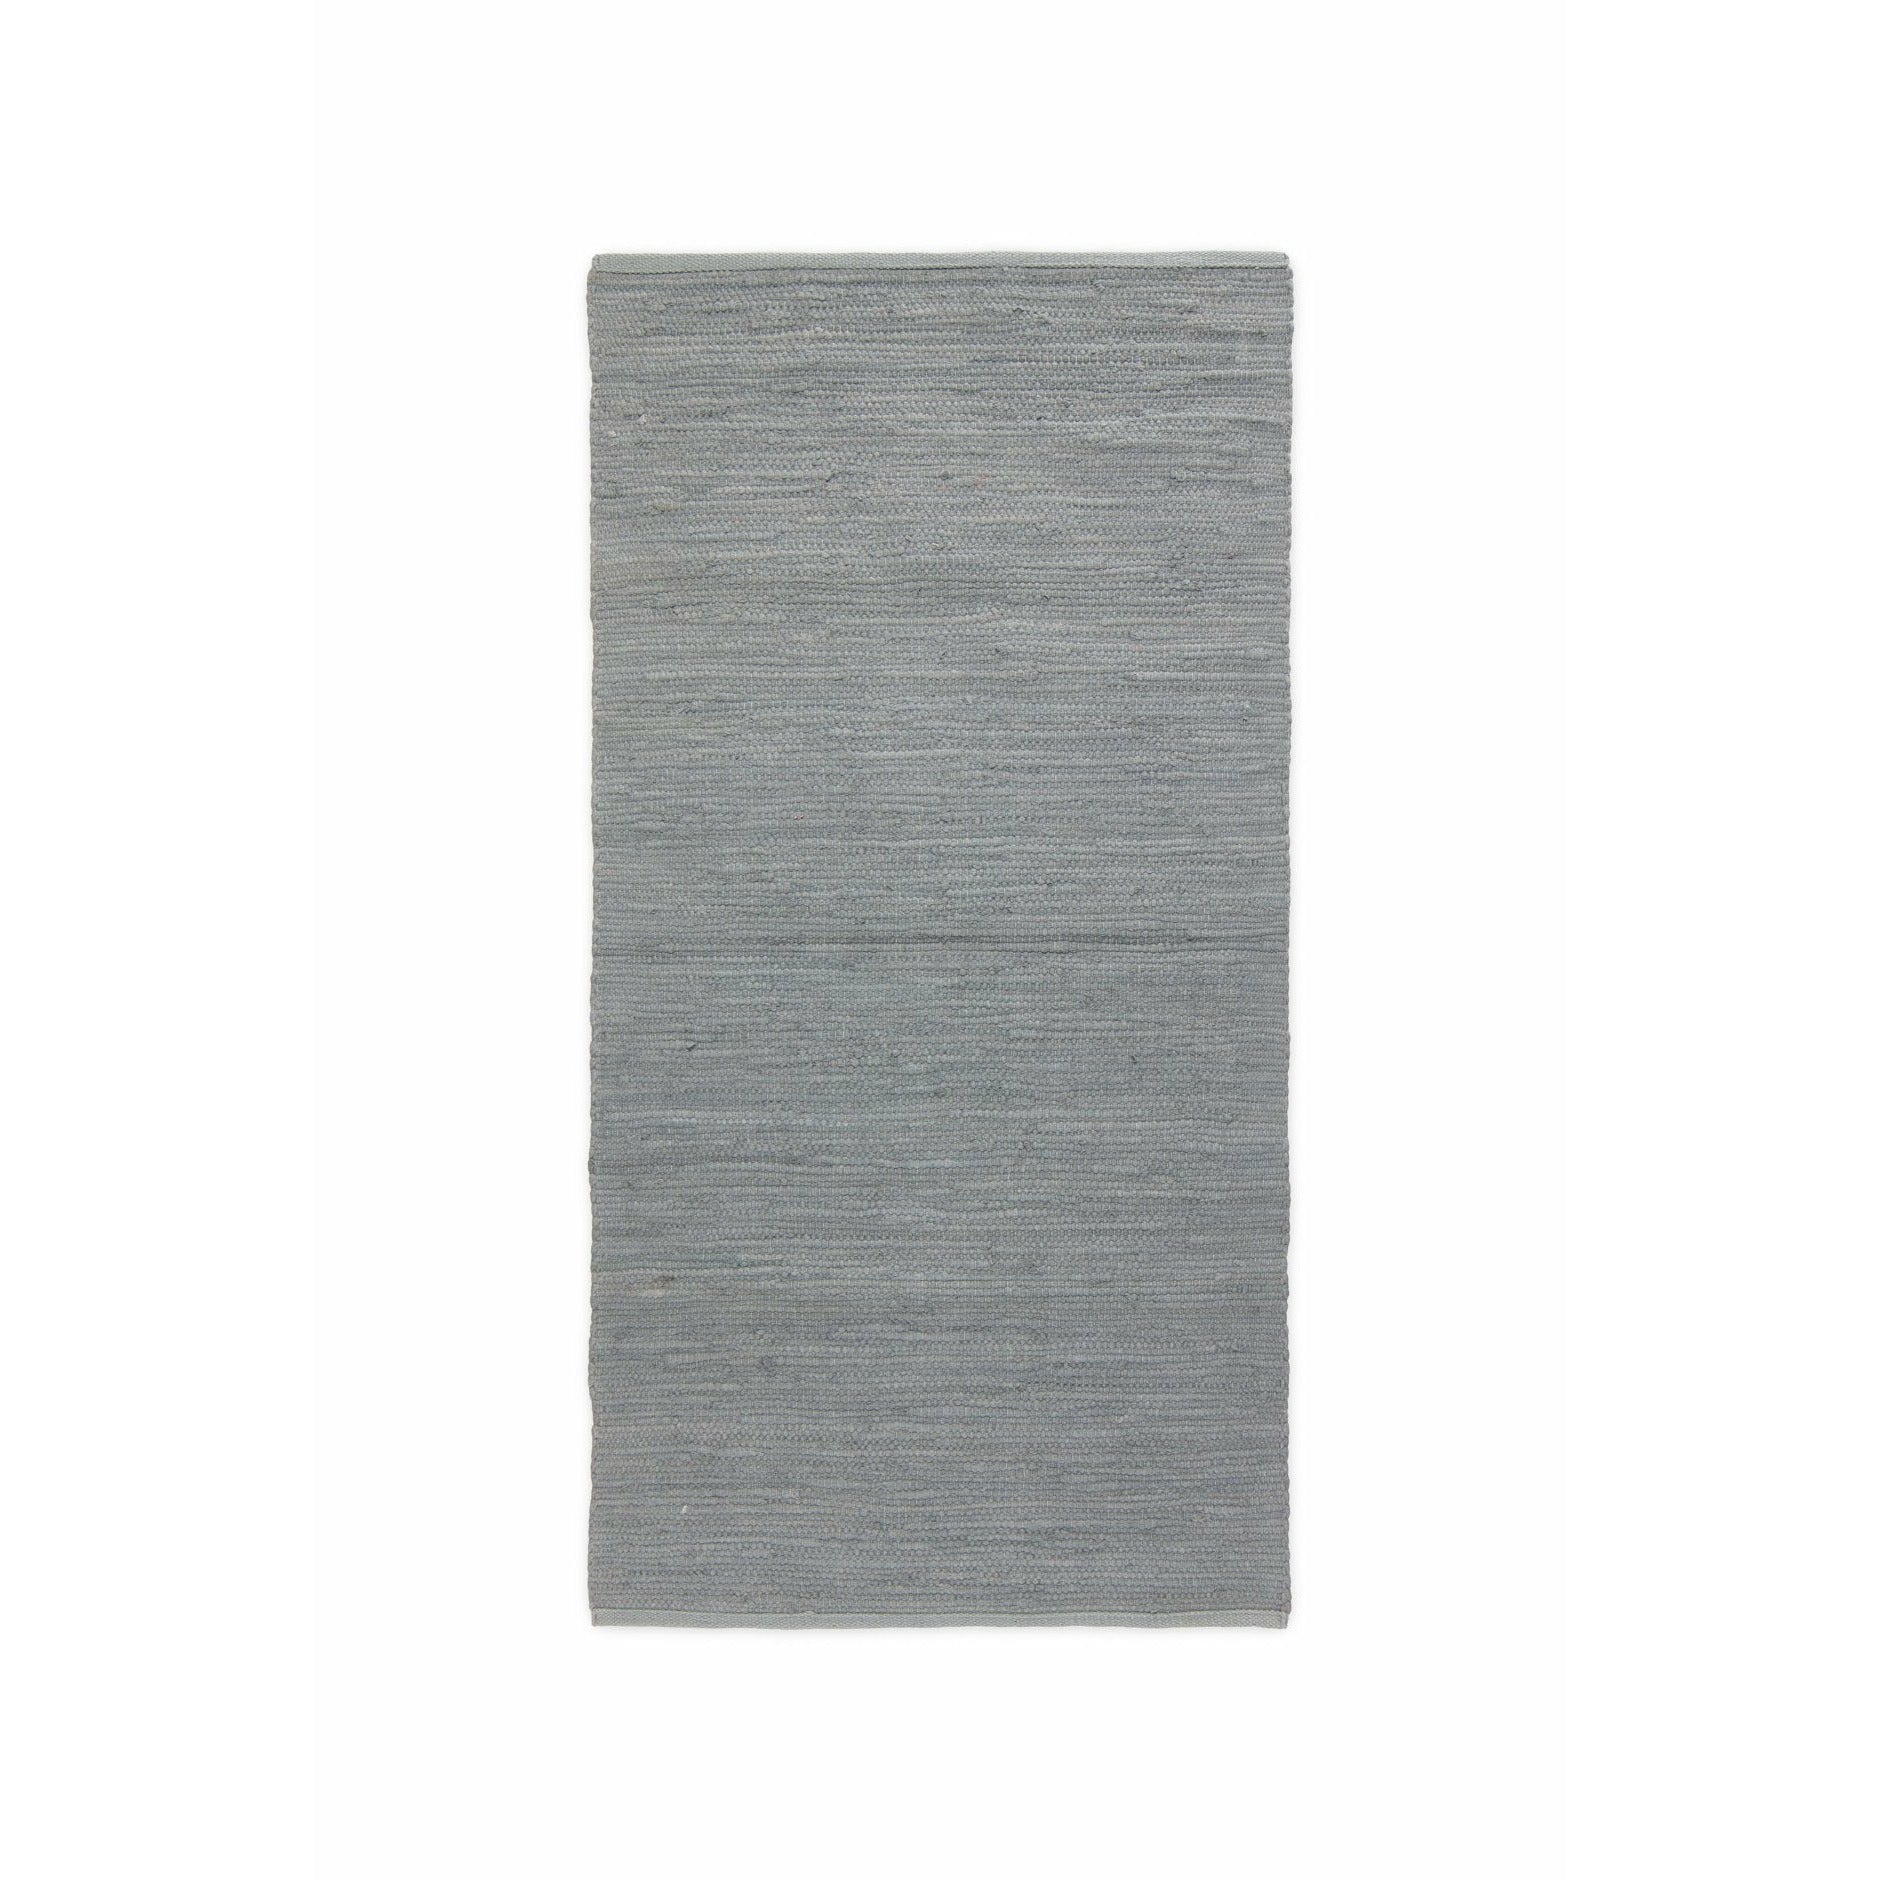 Rug Solid Bomullsmatta ljusgrå, 60 x 90 cm